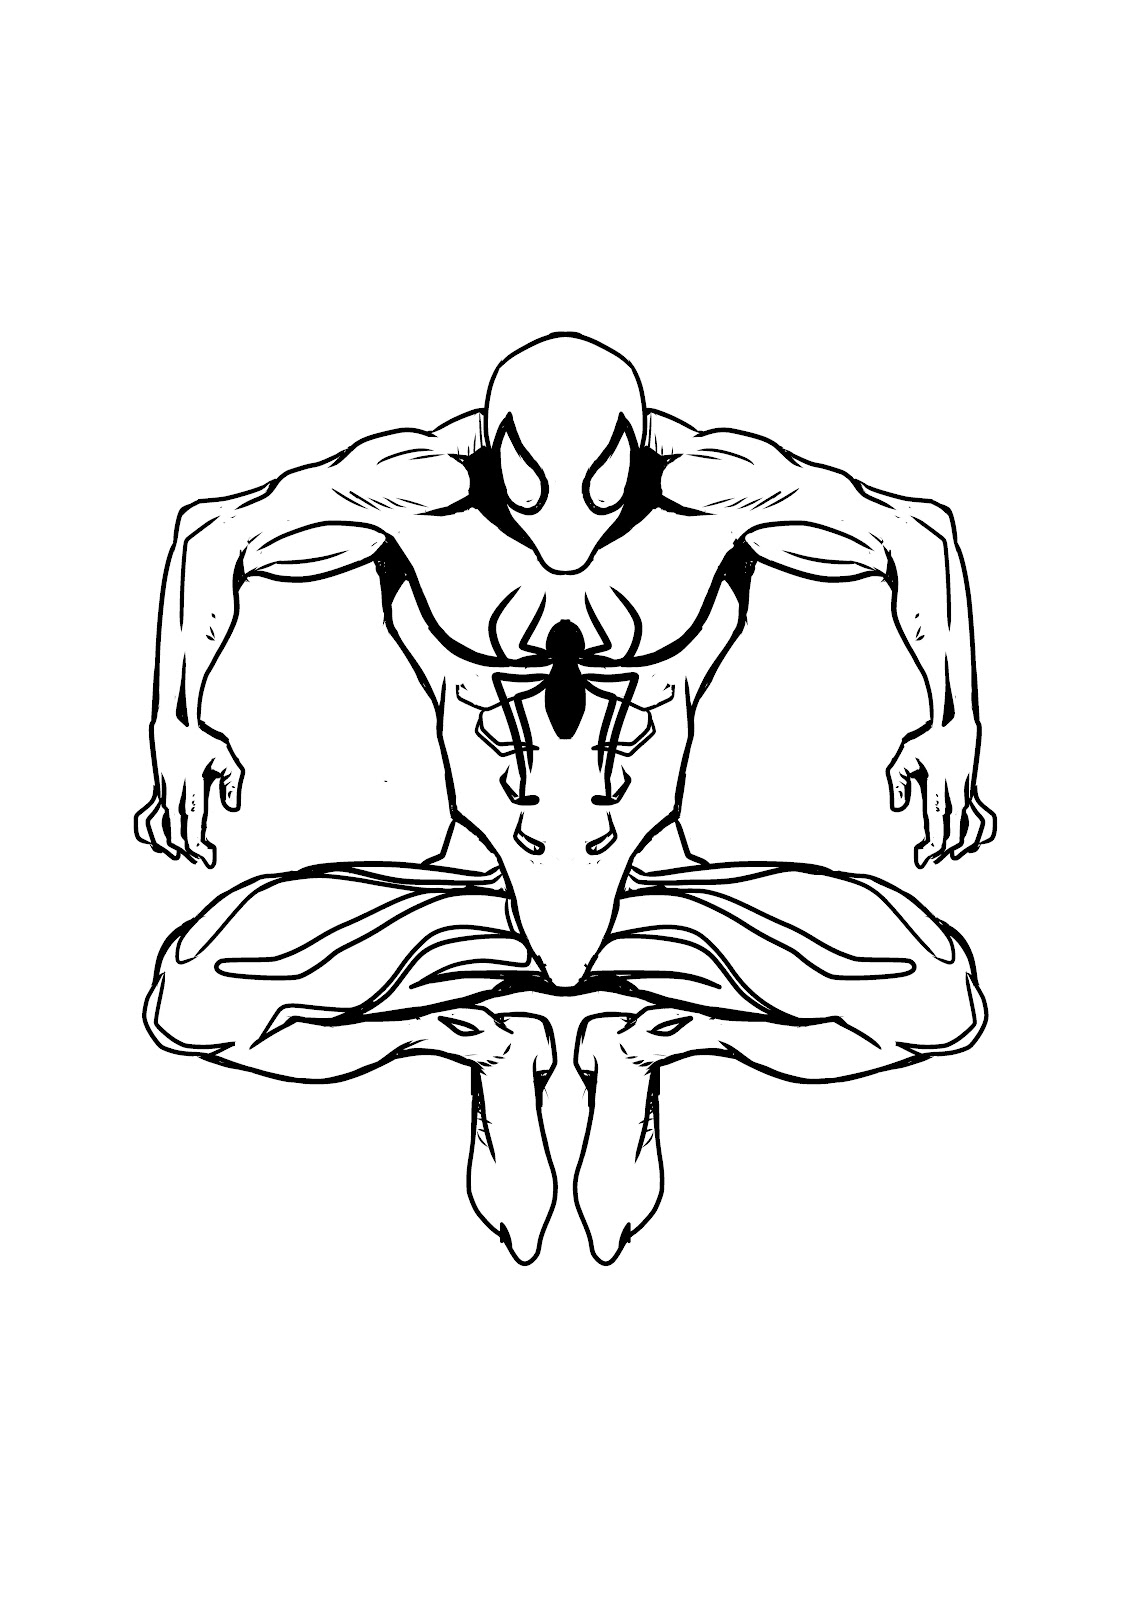 Disegno di Spiderman da colorare online